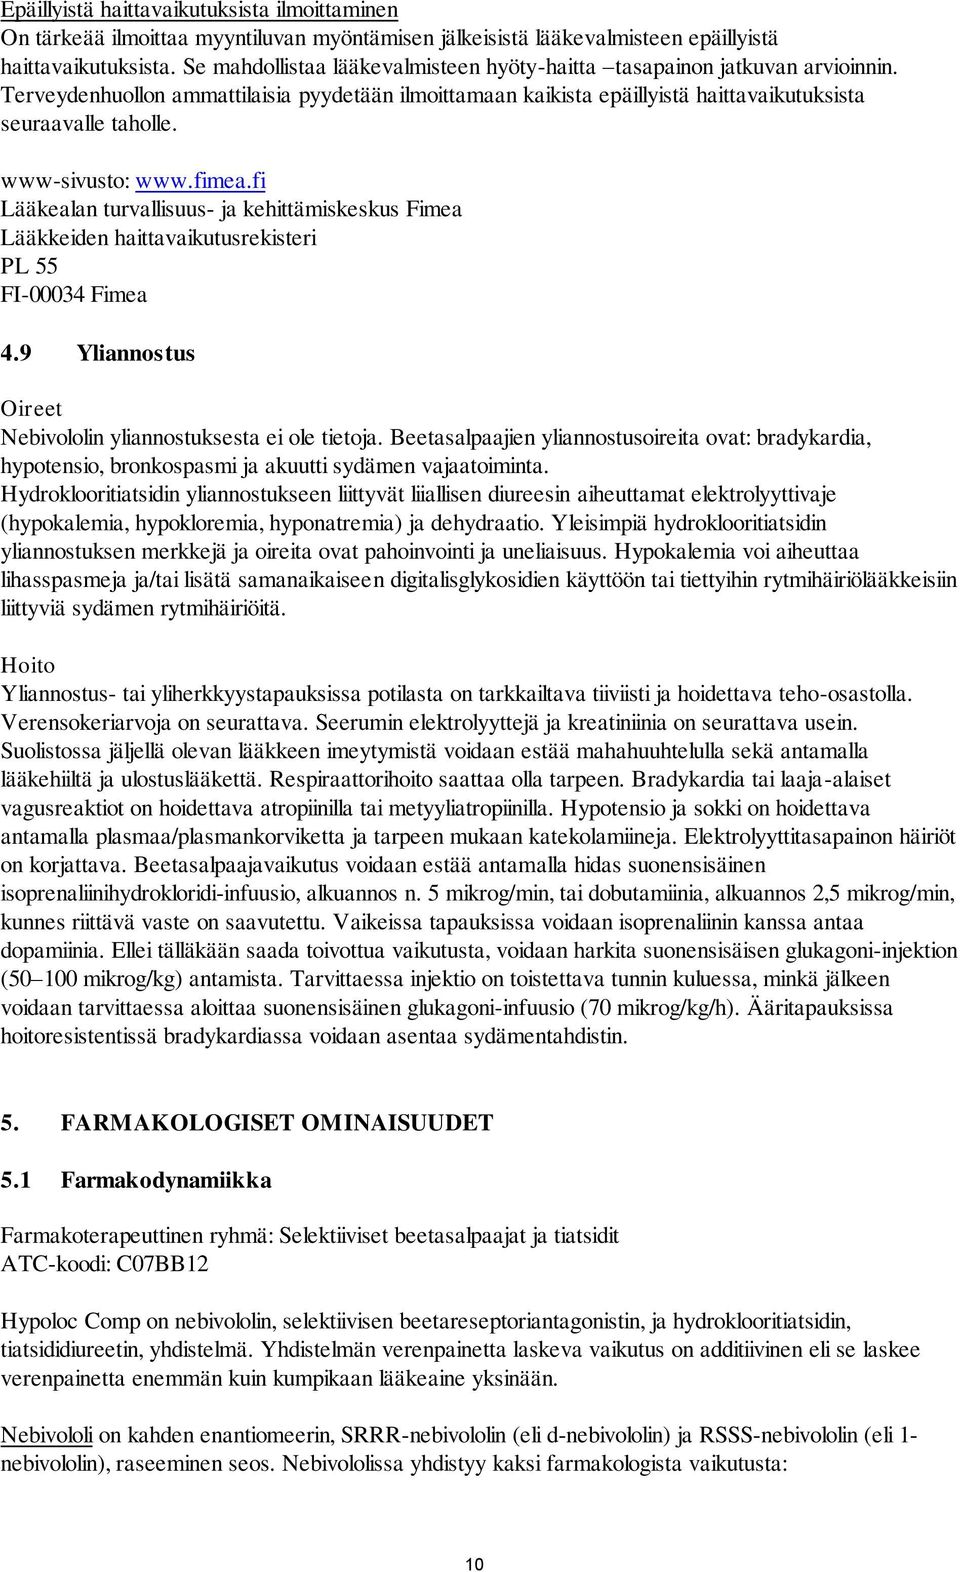 www-sivusto: www.fimea.fi Lääkealan turvallisuus- ja kehittämiskeskus Fimea Lääkkeiden haittavaikutusrekisteri PL 55 FI-00034 Fimea 4.9 Yliannostus Oireet Nebivololin yliannostuksesta ei ole tietoja.